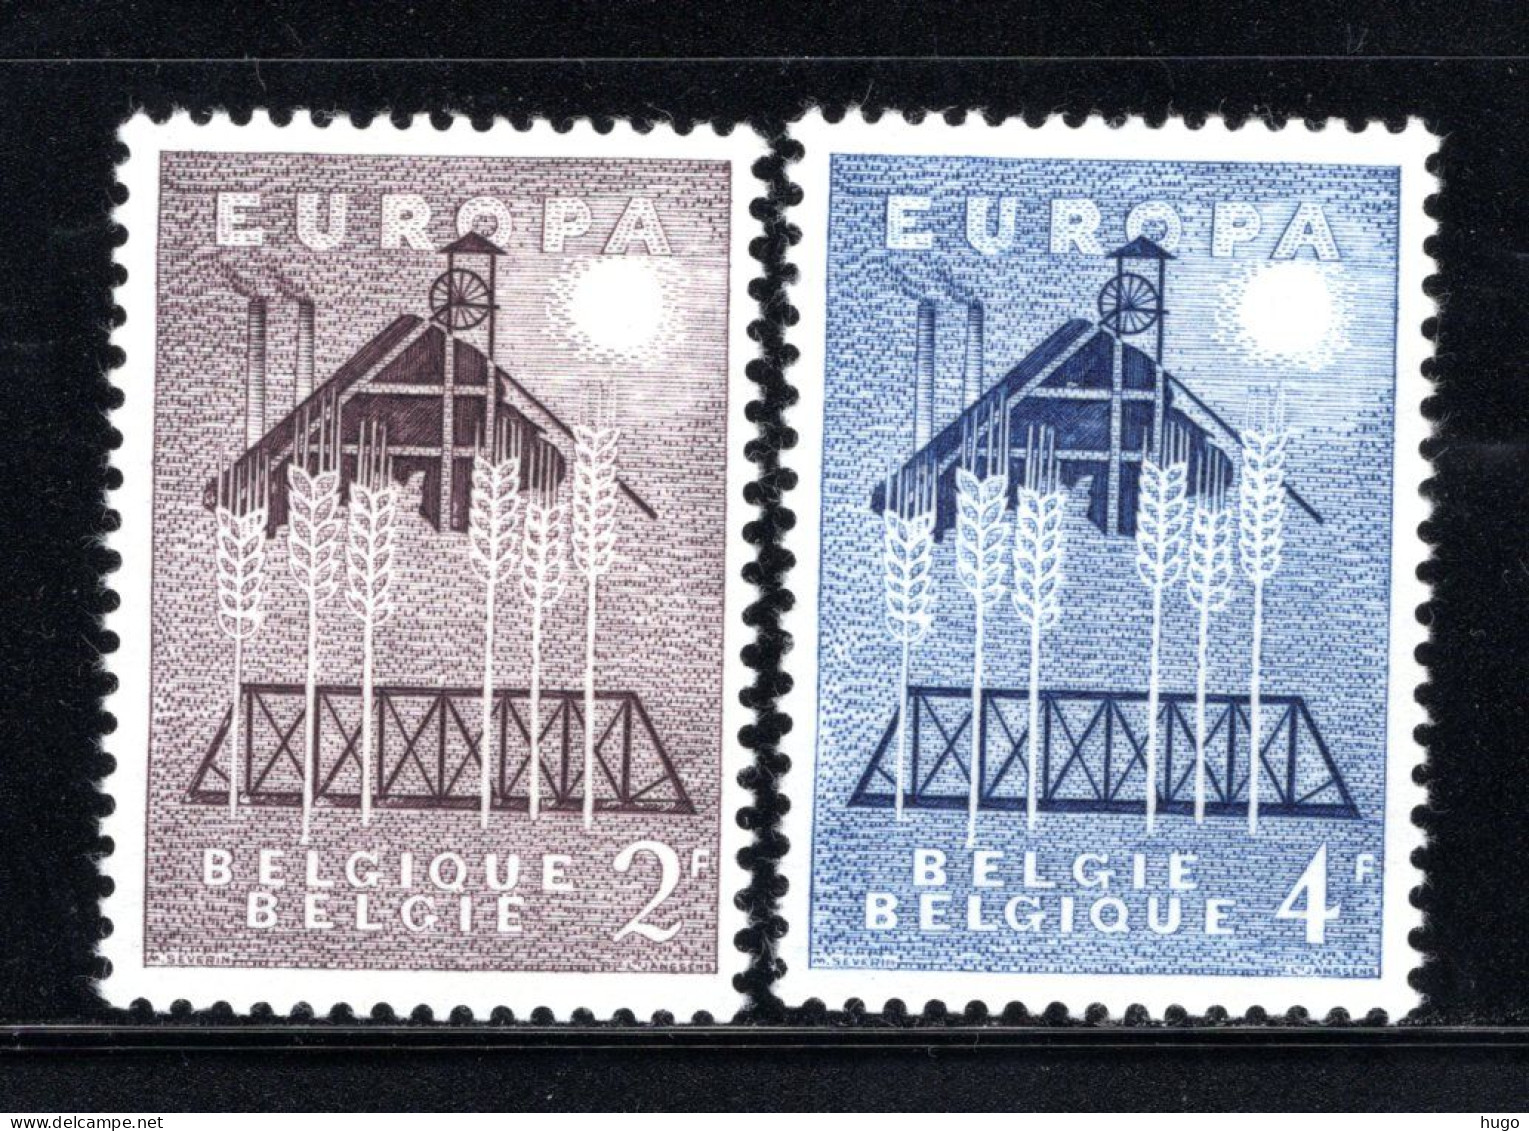 1025/1026 MNH 1957 - Europa. - Neufs